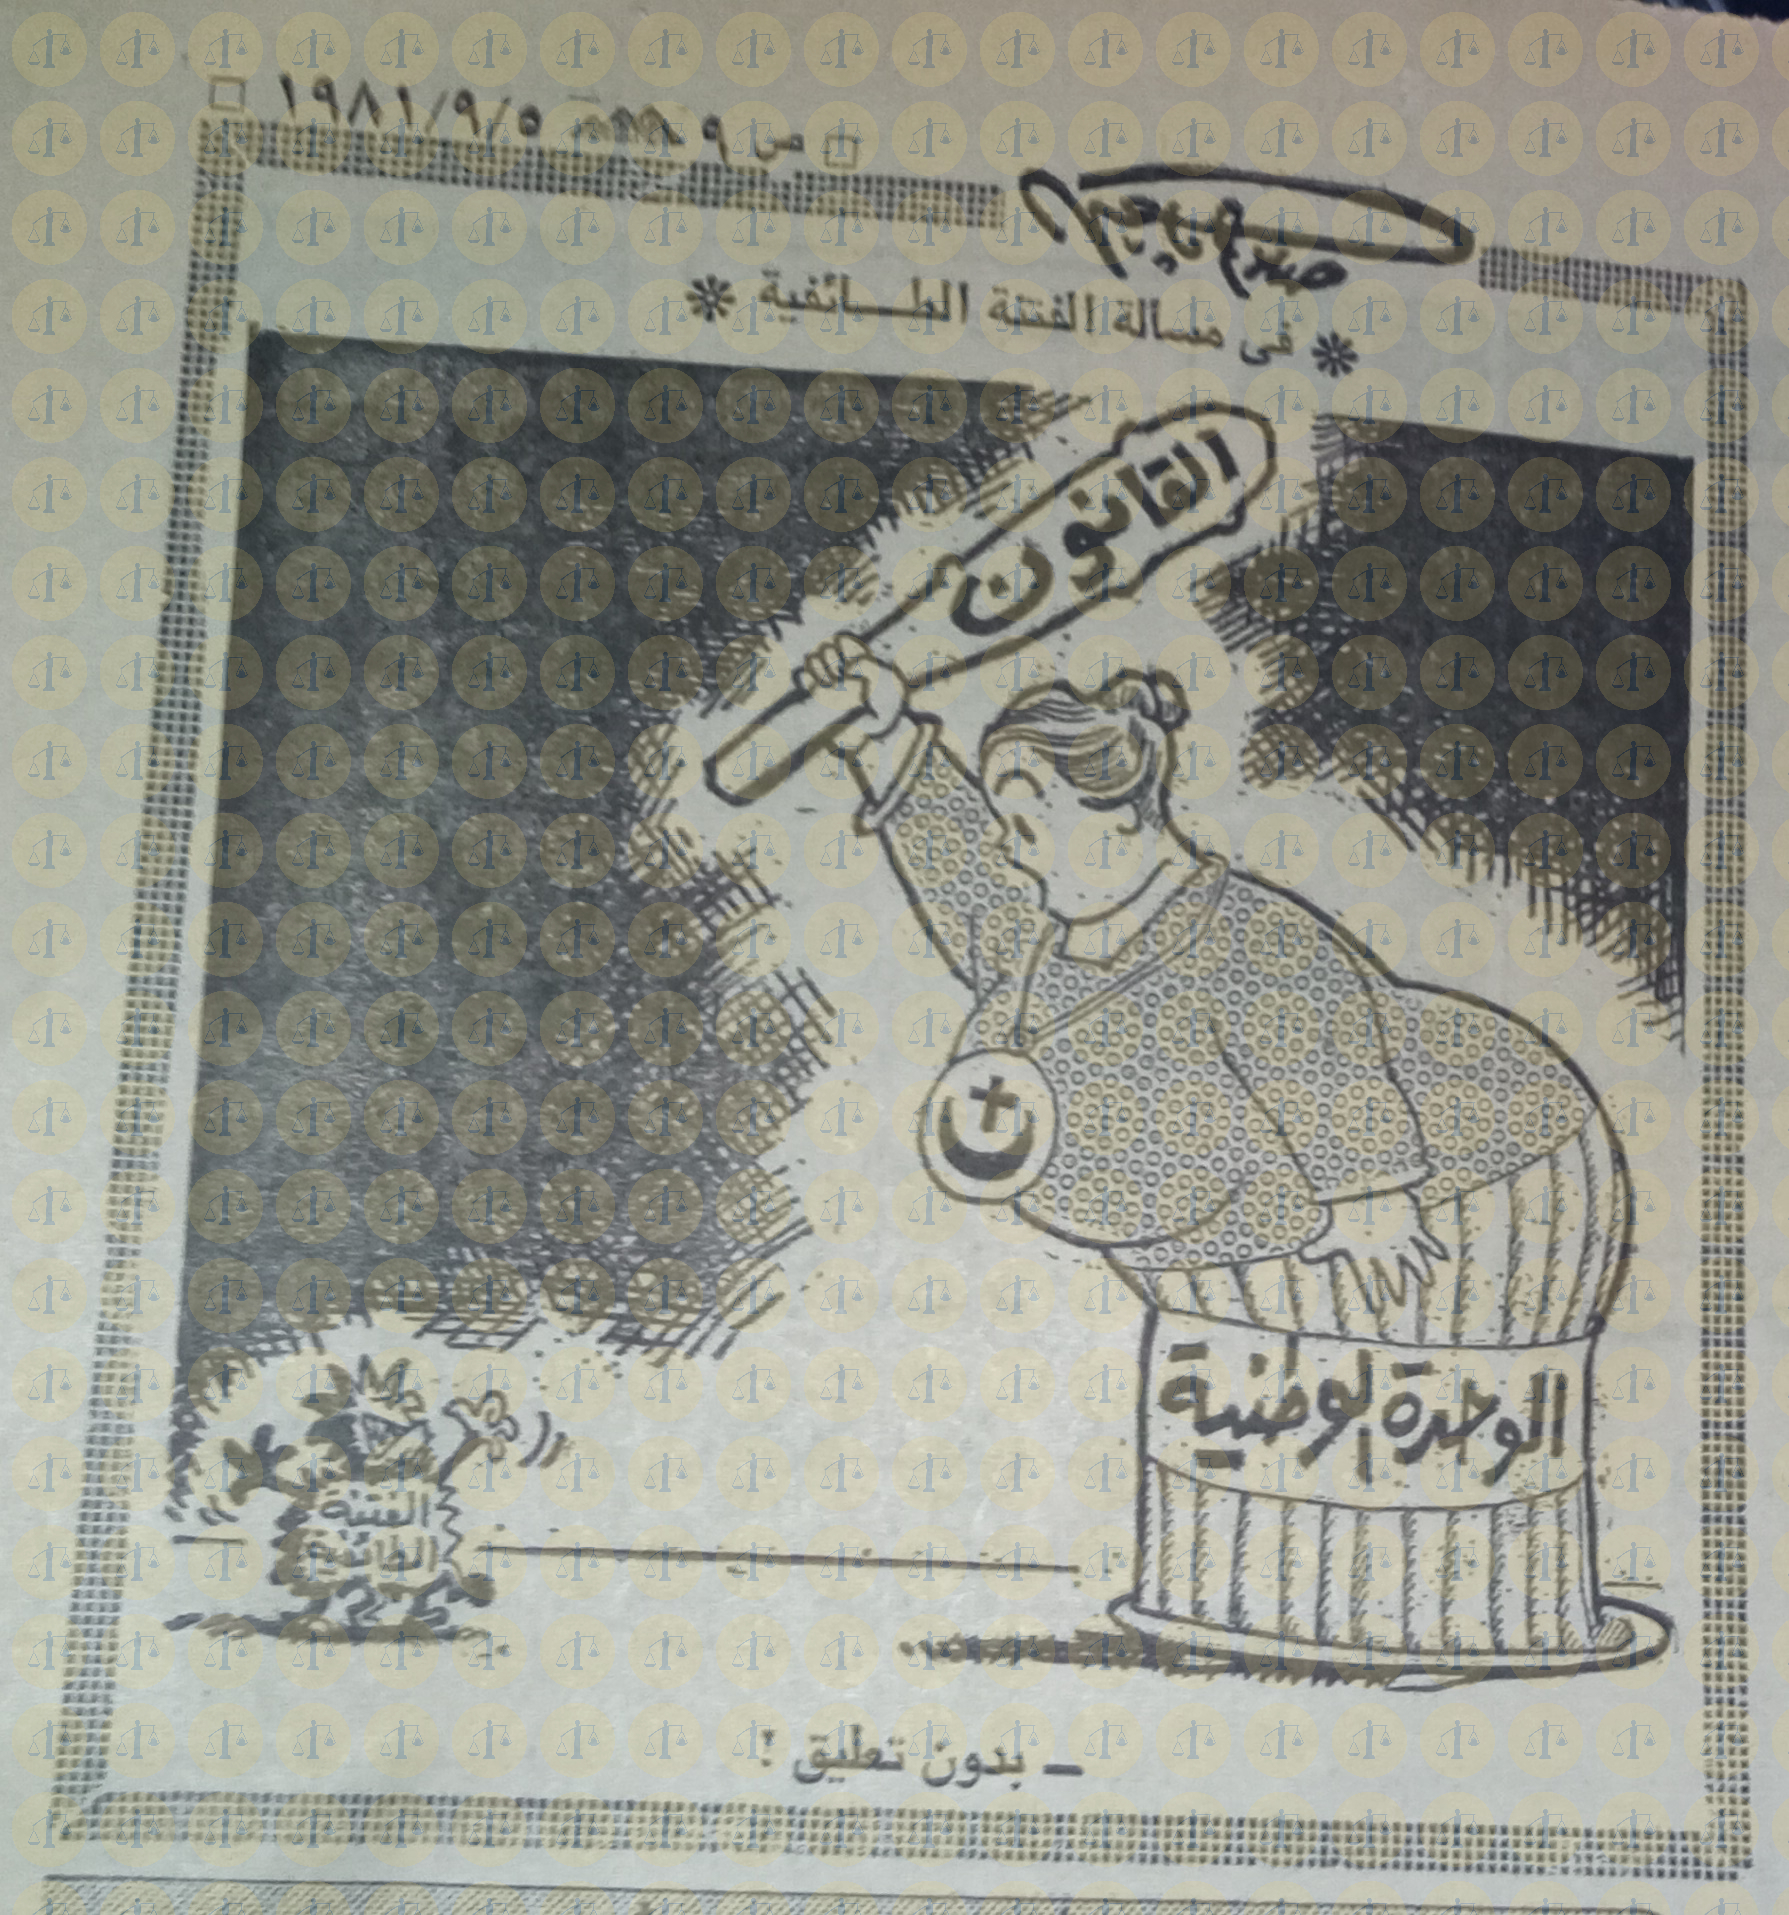 كاريكاتير صلاح جاهين يوم 5 سبتمبر 1981